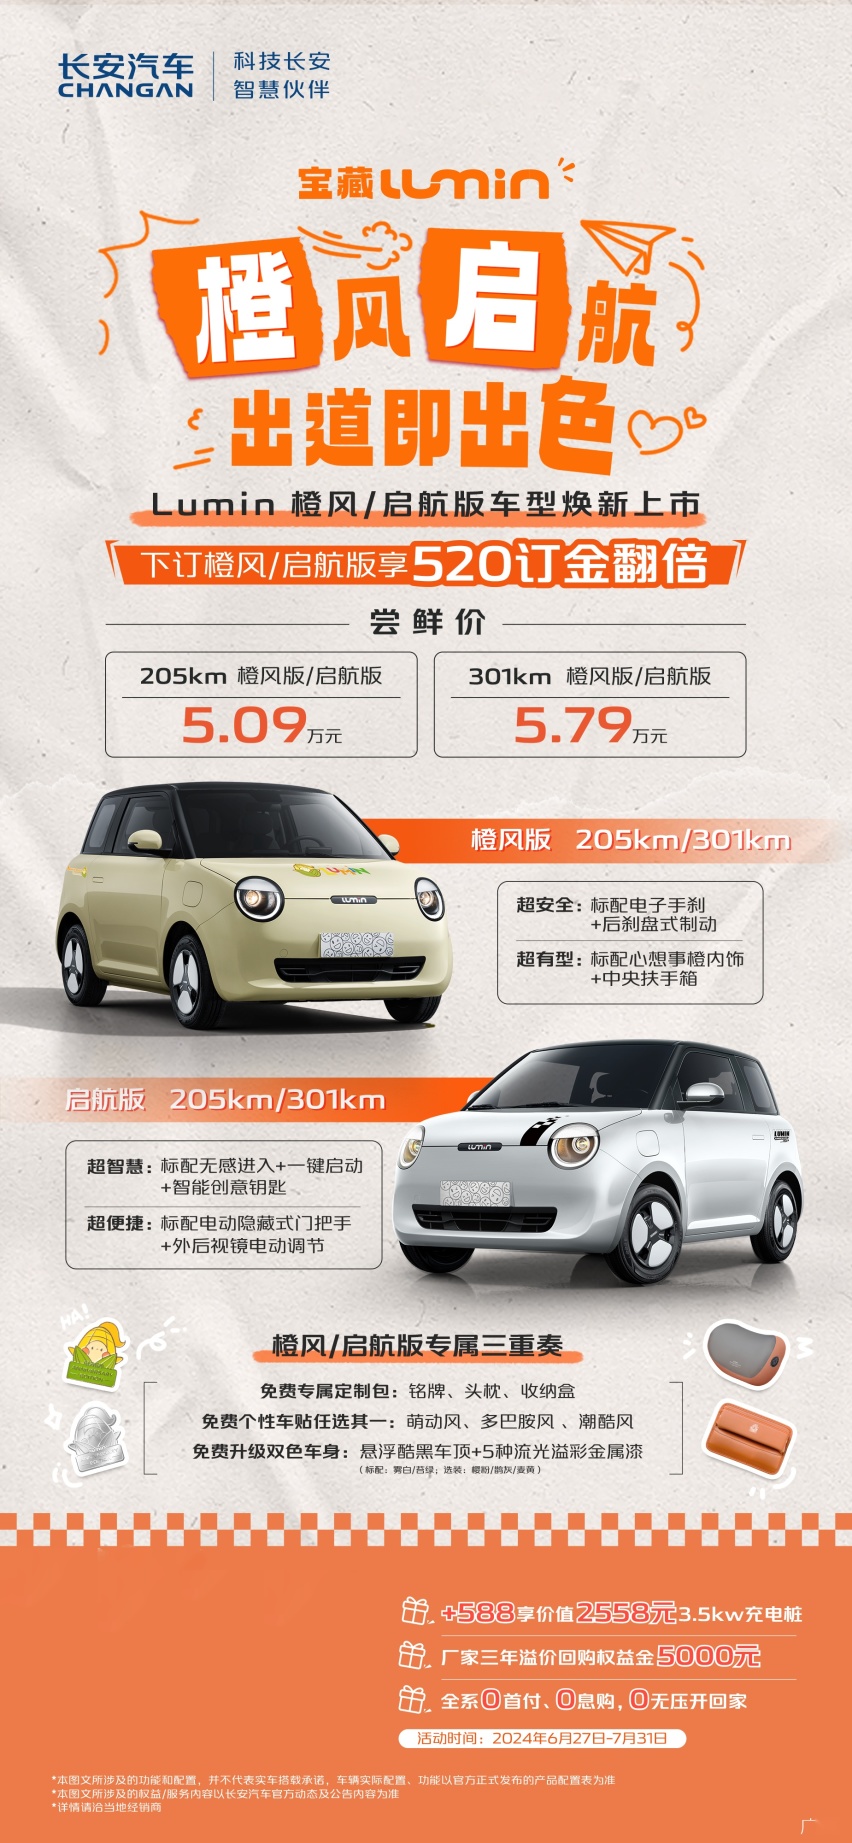 出道即出色 长安Lumin新车型“橙风启航”上市